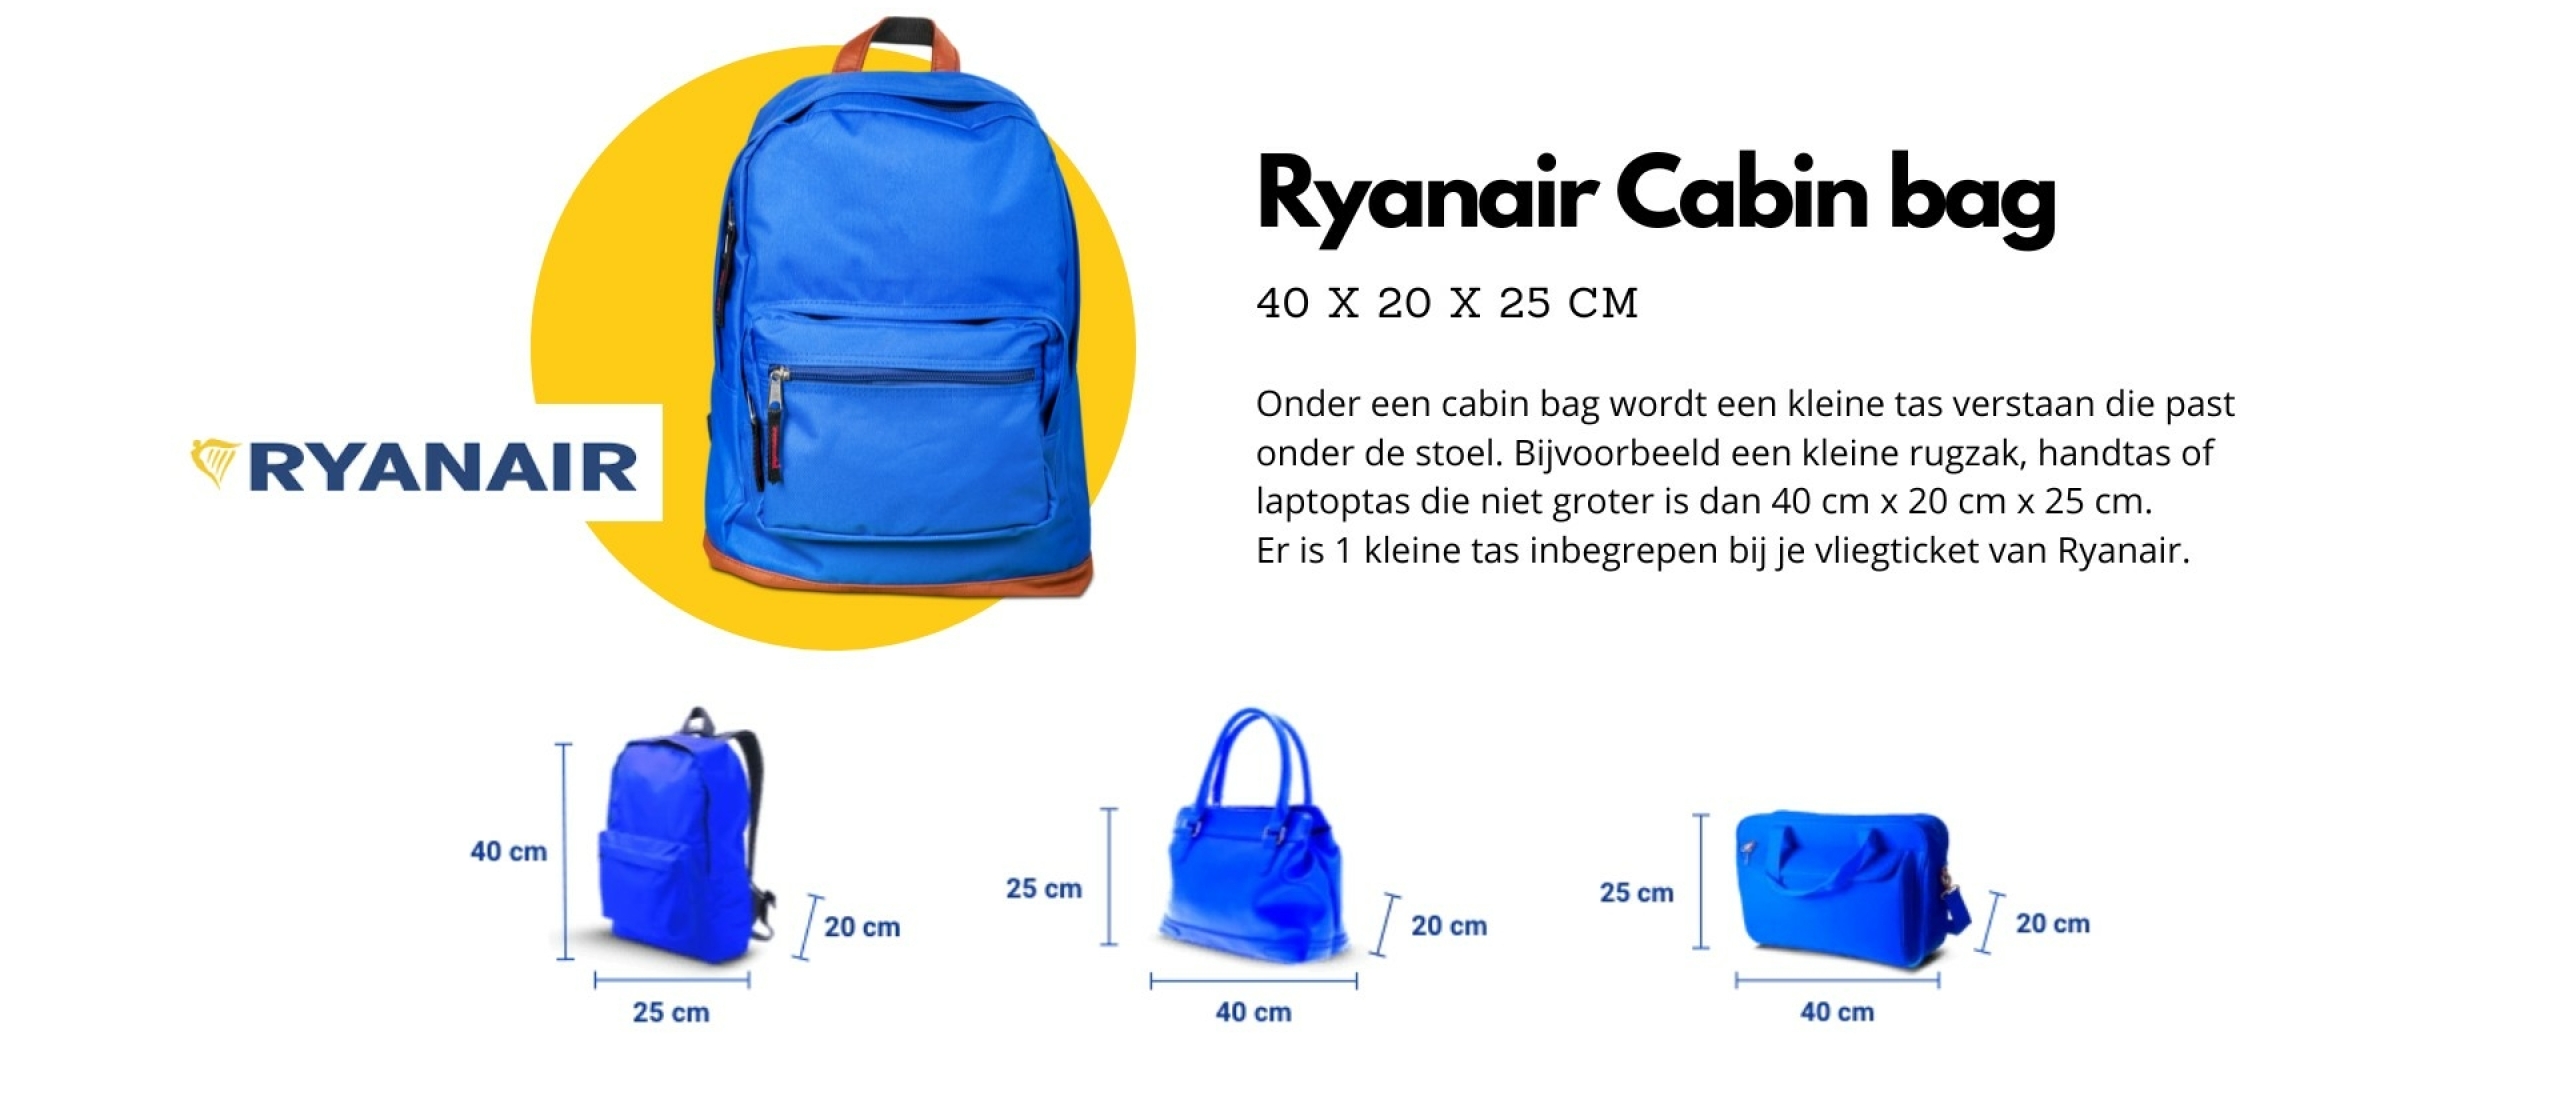 De perfecte Ryanair cabin bag voor reizen op handbagage 40x20x25